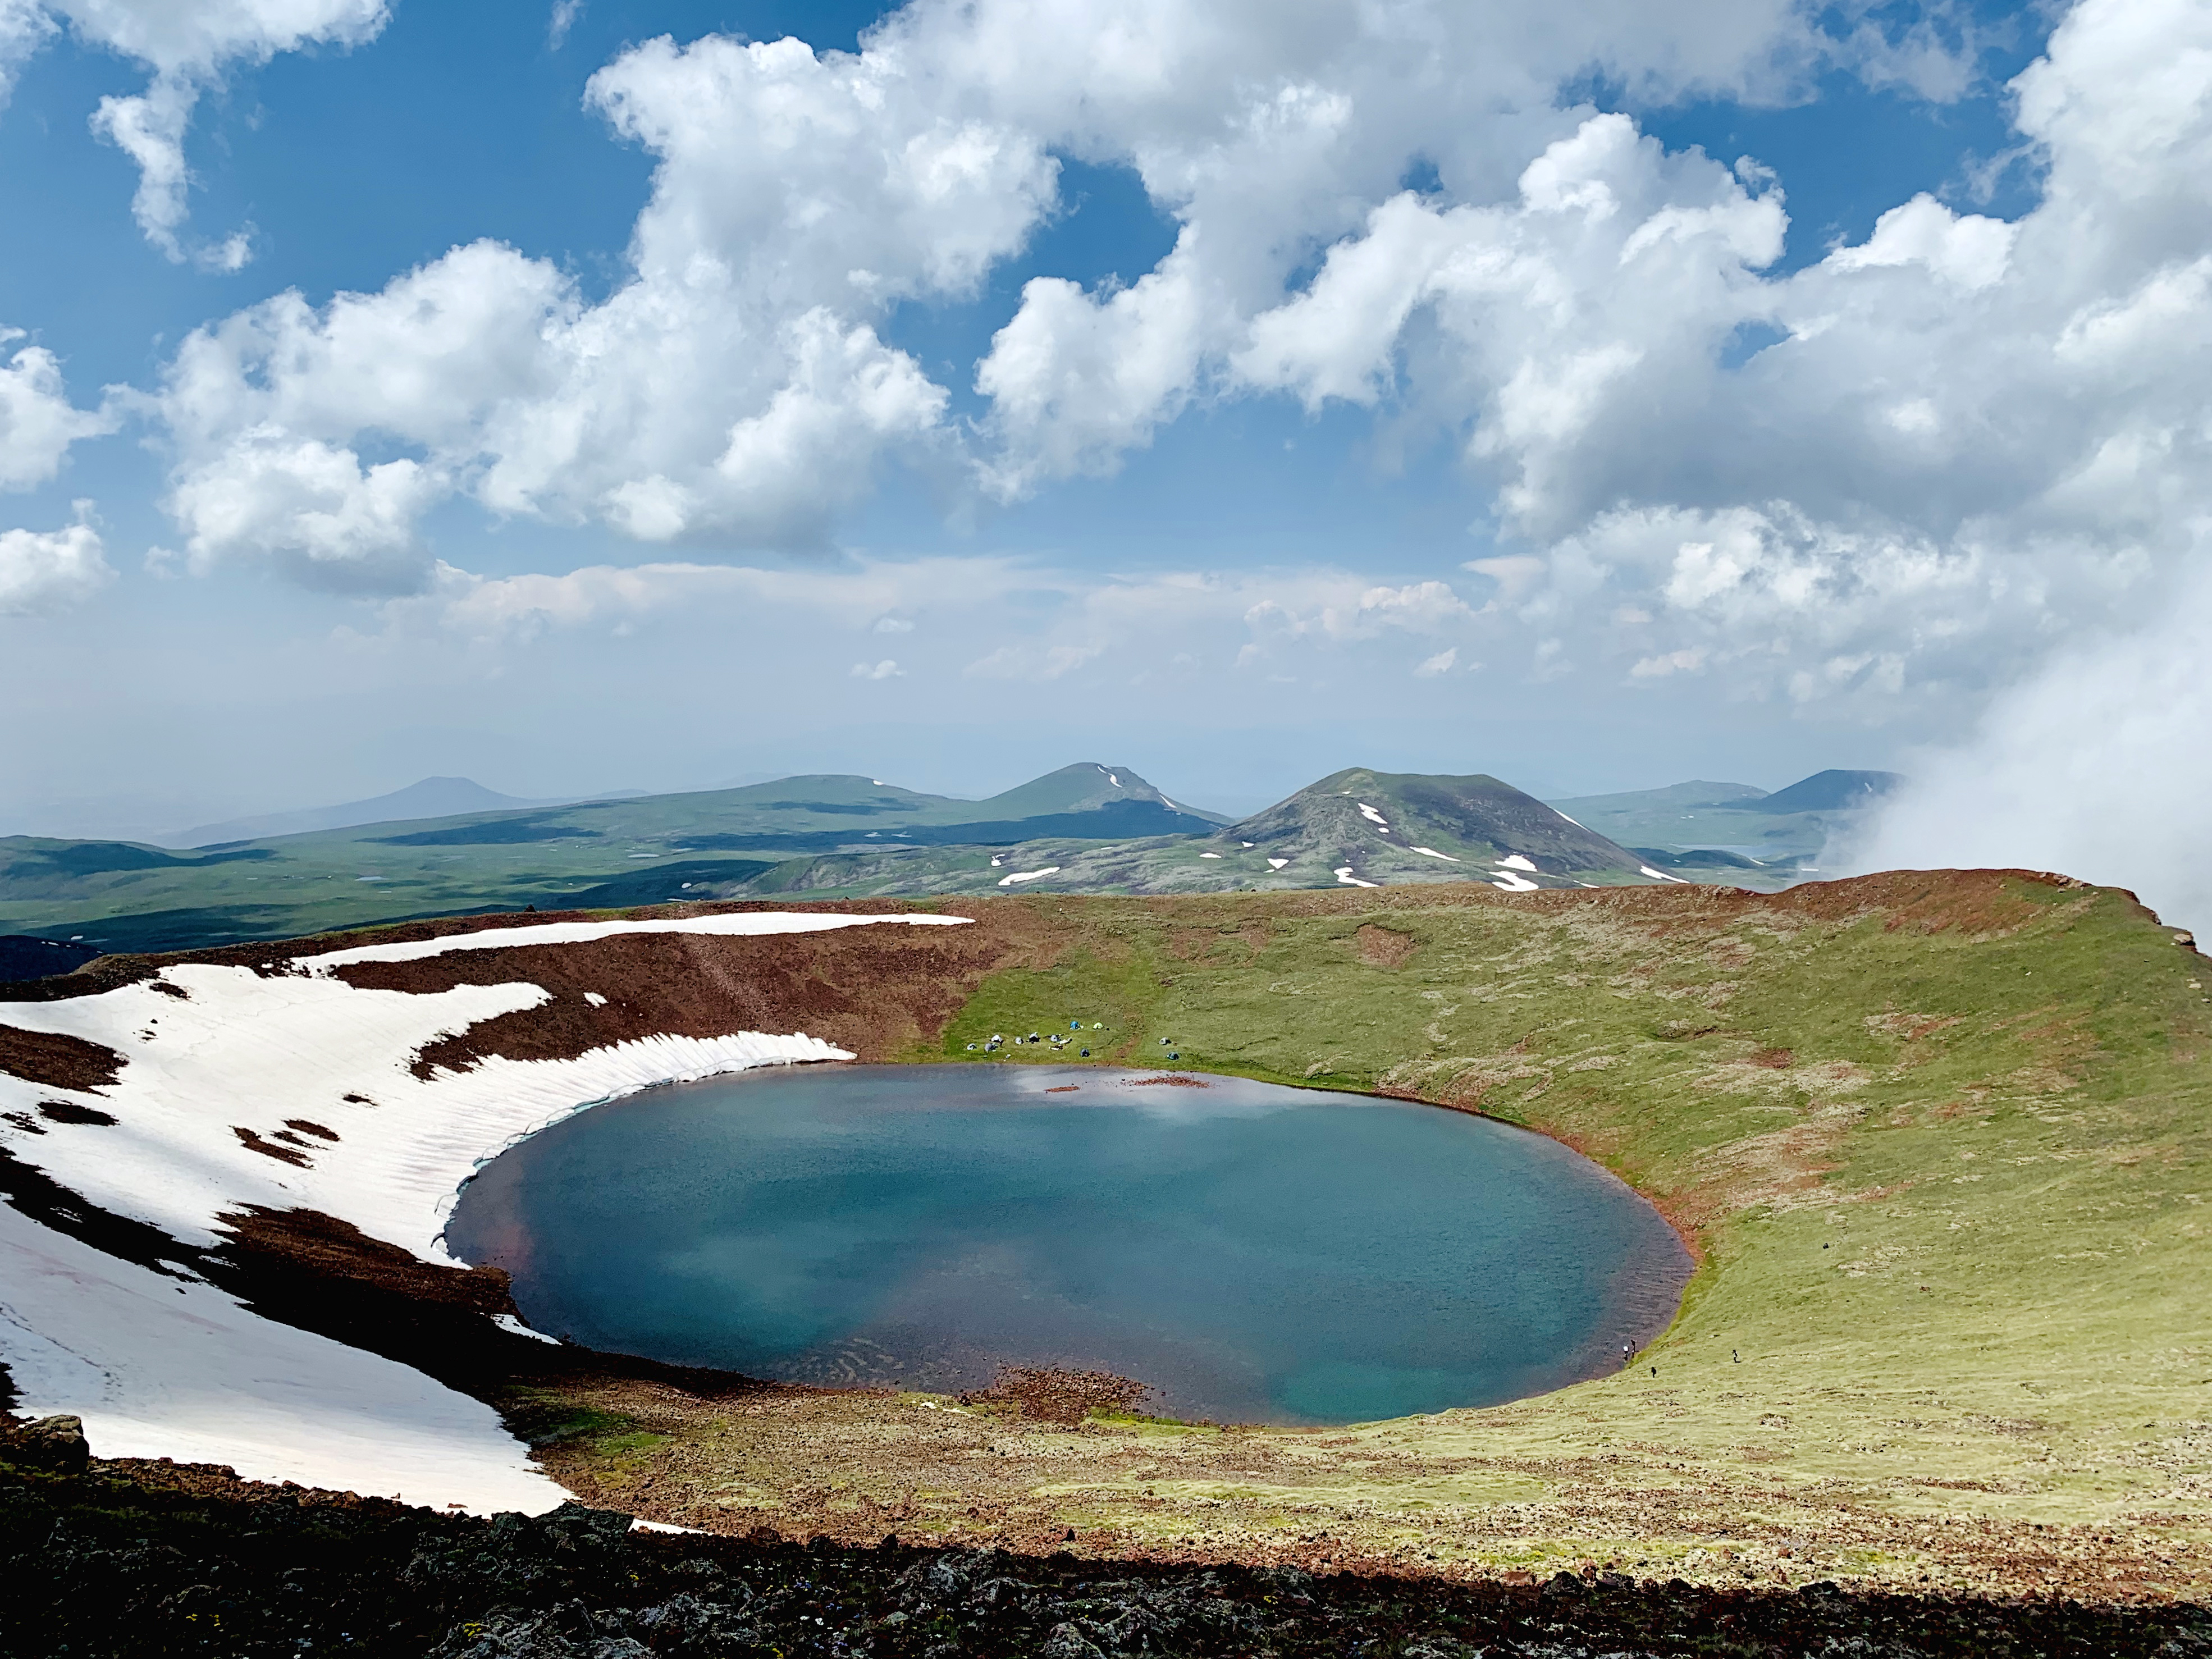 Աժդահակ (լեռնագագաթ) - Վիքիպեդիա՝ ազատ հանրագիտարան